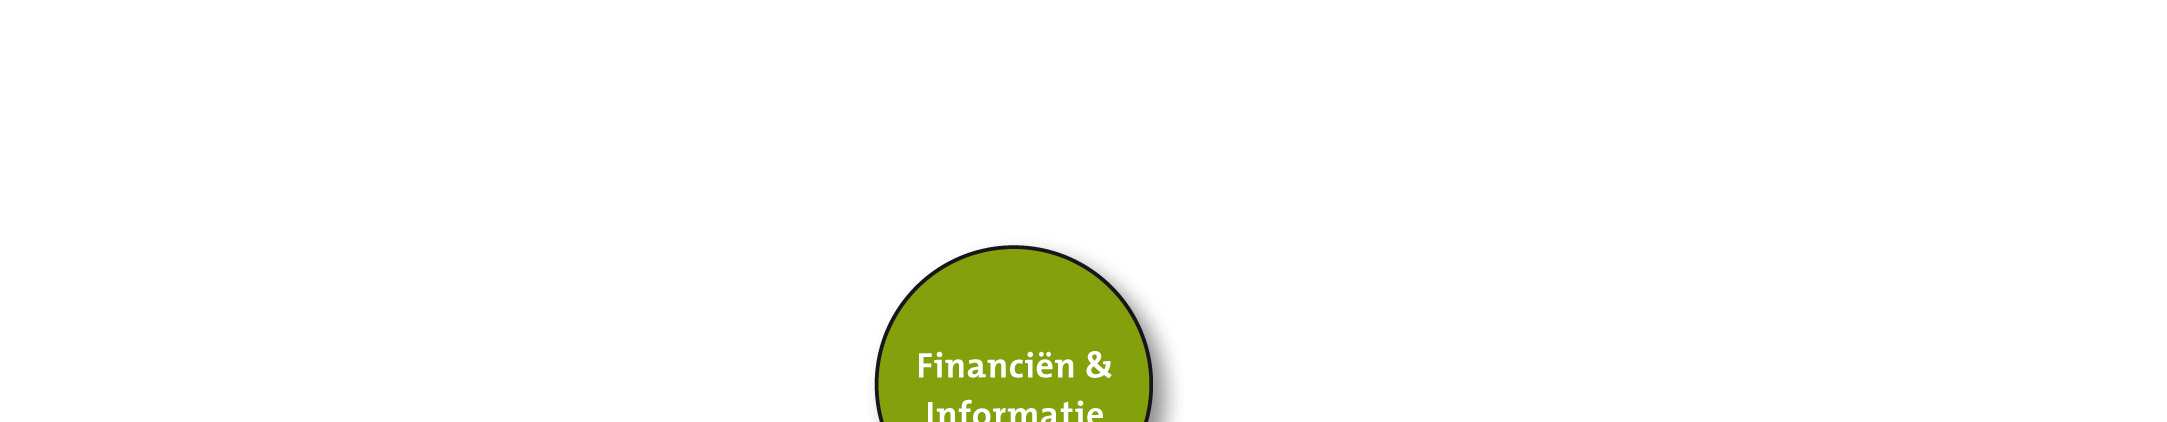 4.8 Financiën&Informatie De afdeling Financiën & Informatie draagt vanuit zijn ondersteunende en adviserende rol bij aan het realiseren van het organisatiebeleid van Tiwos.